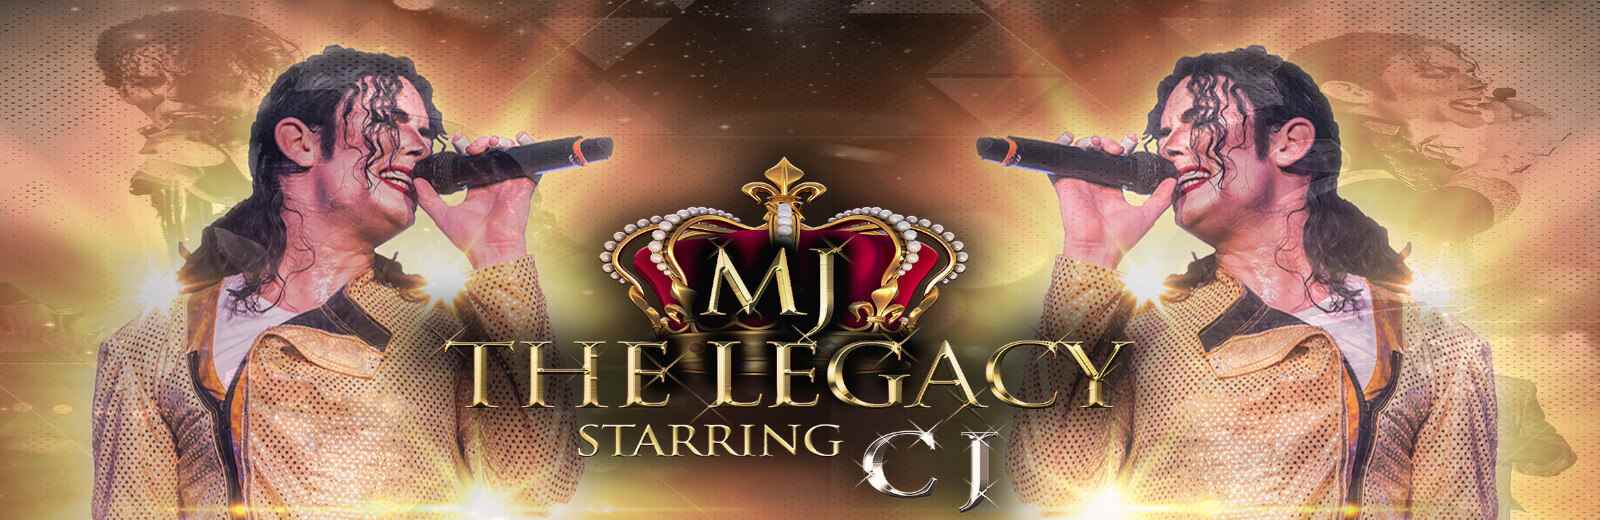 MJ The Legacy Starring CJ